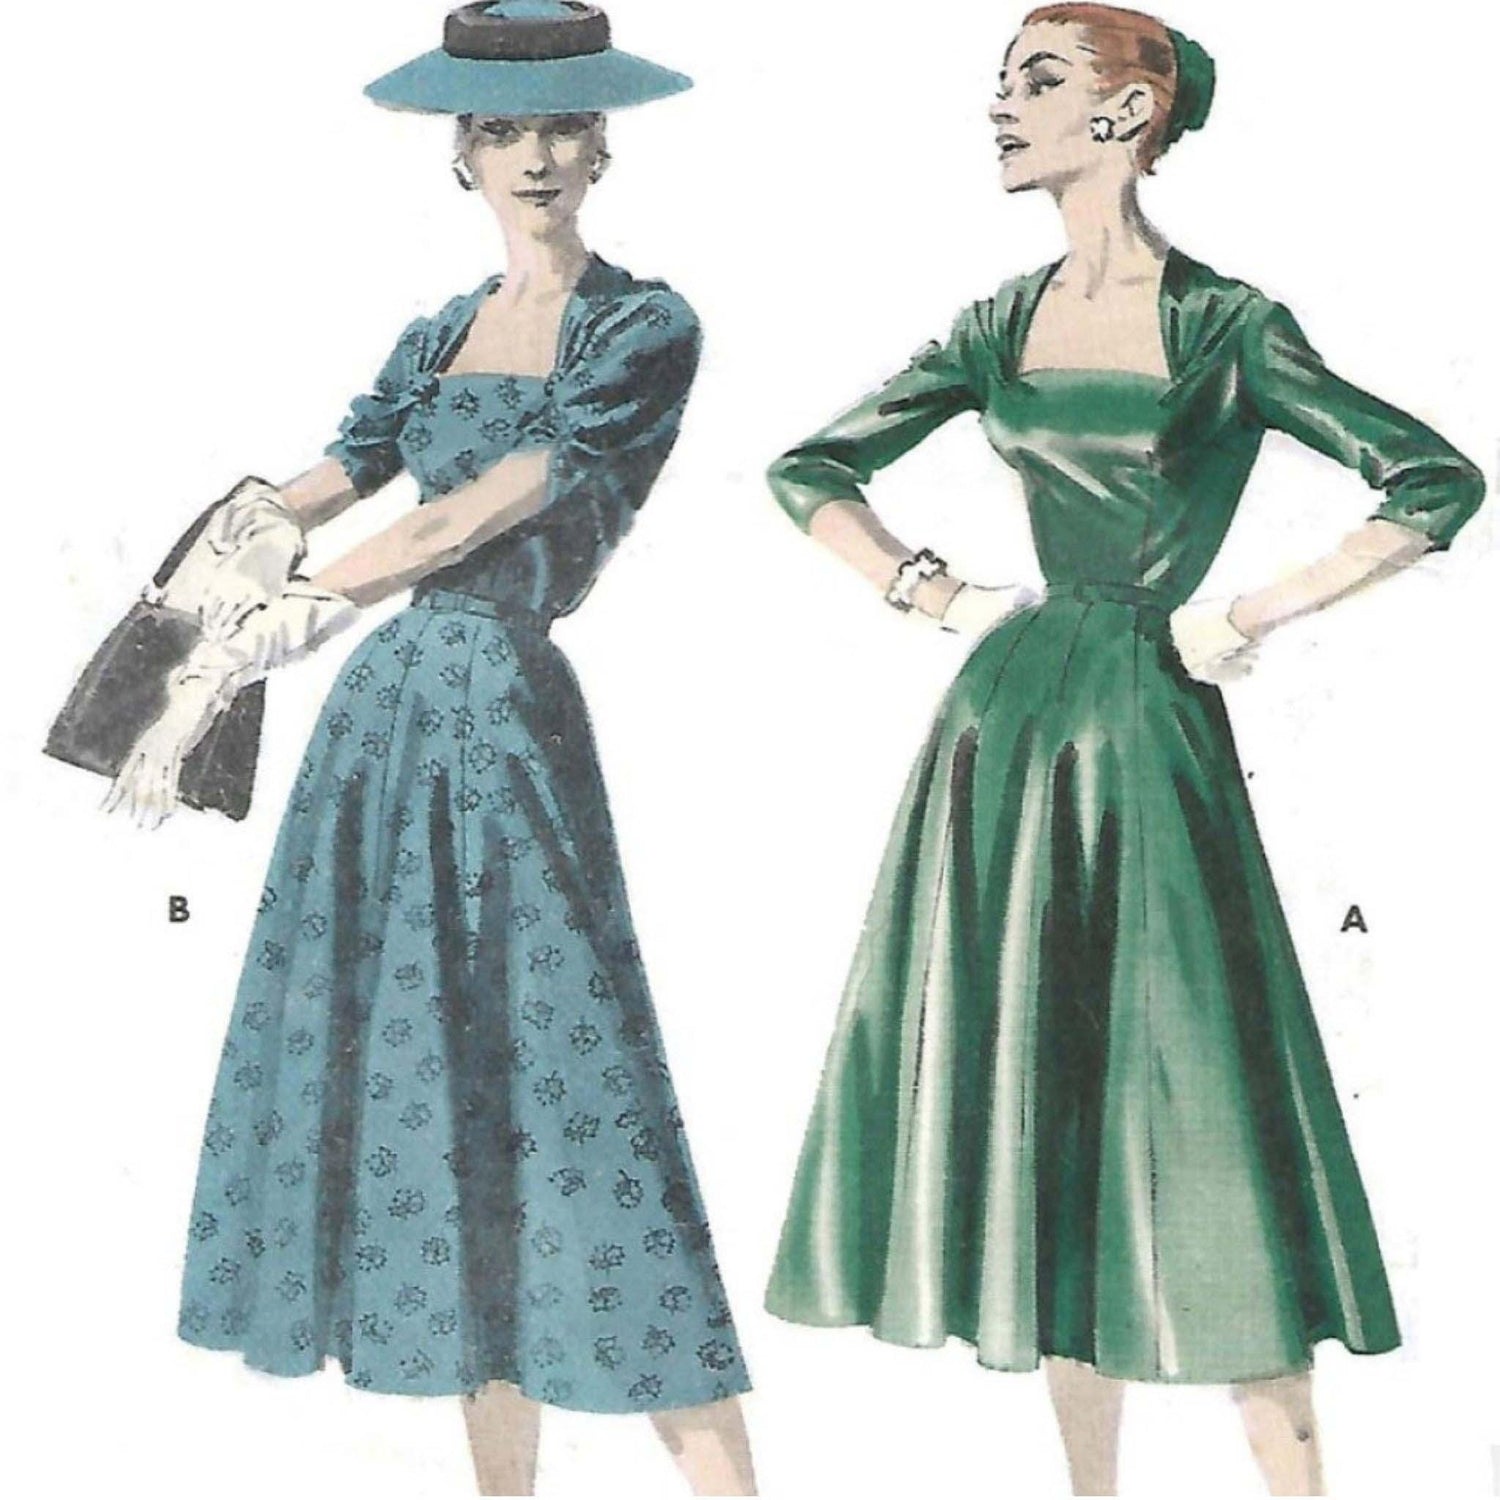 1950s Vintage Pattern, Women's Rockabilly Versatile Fit Dress